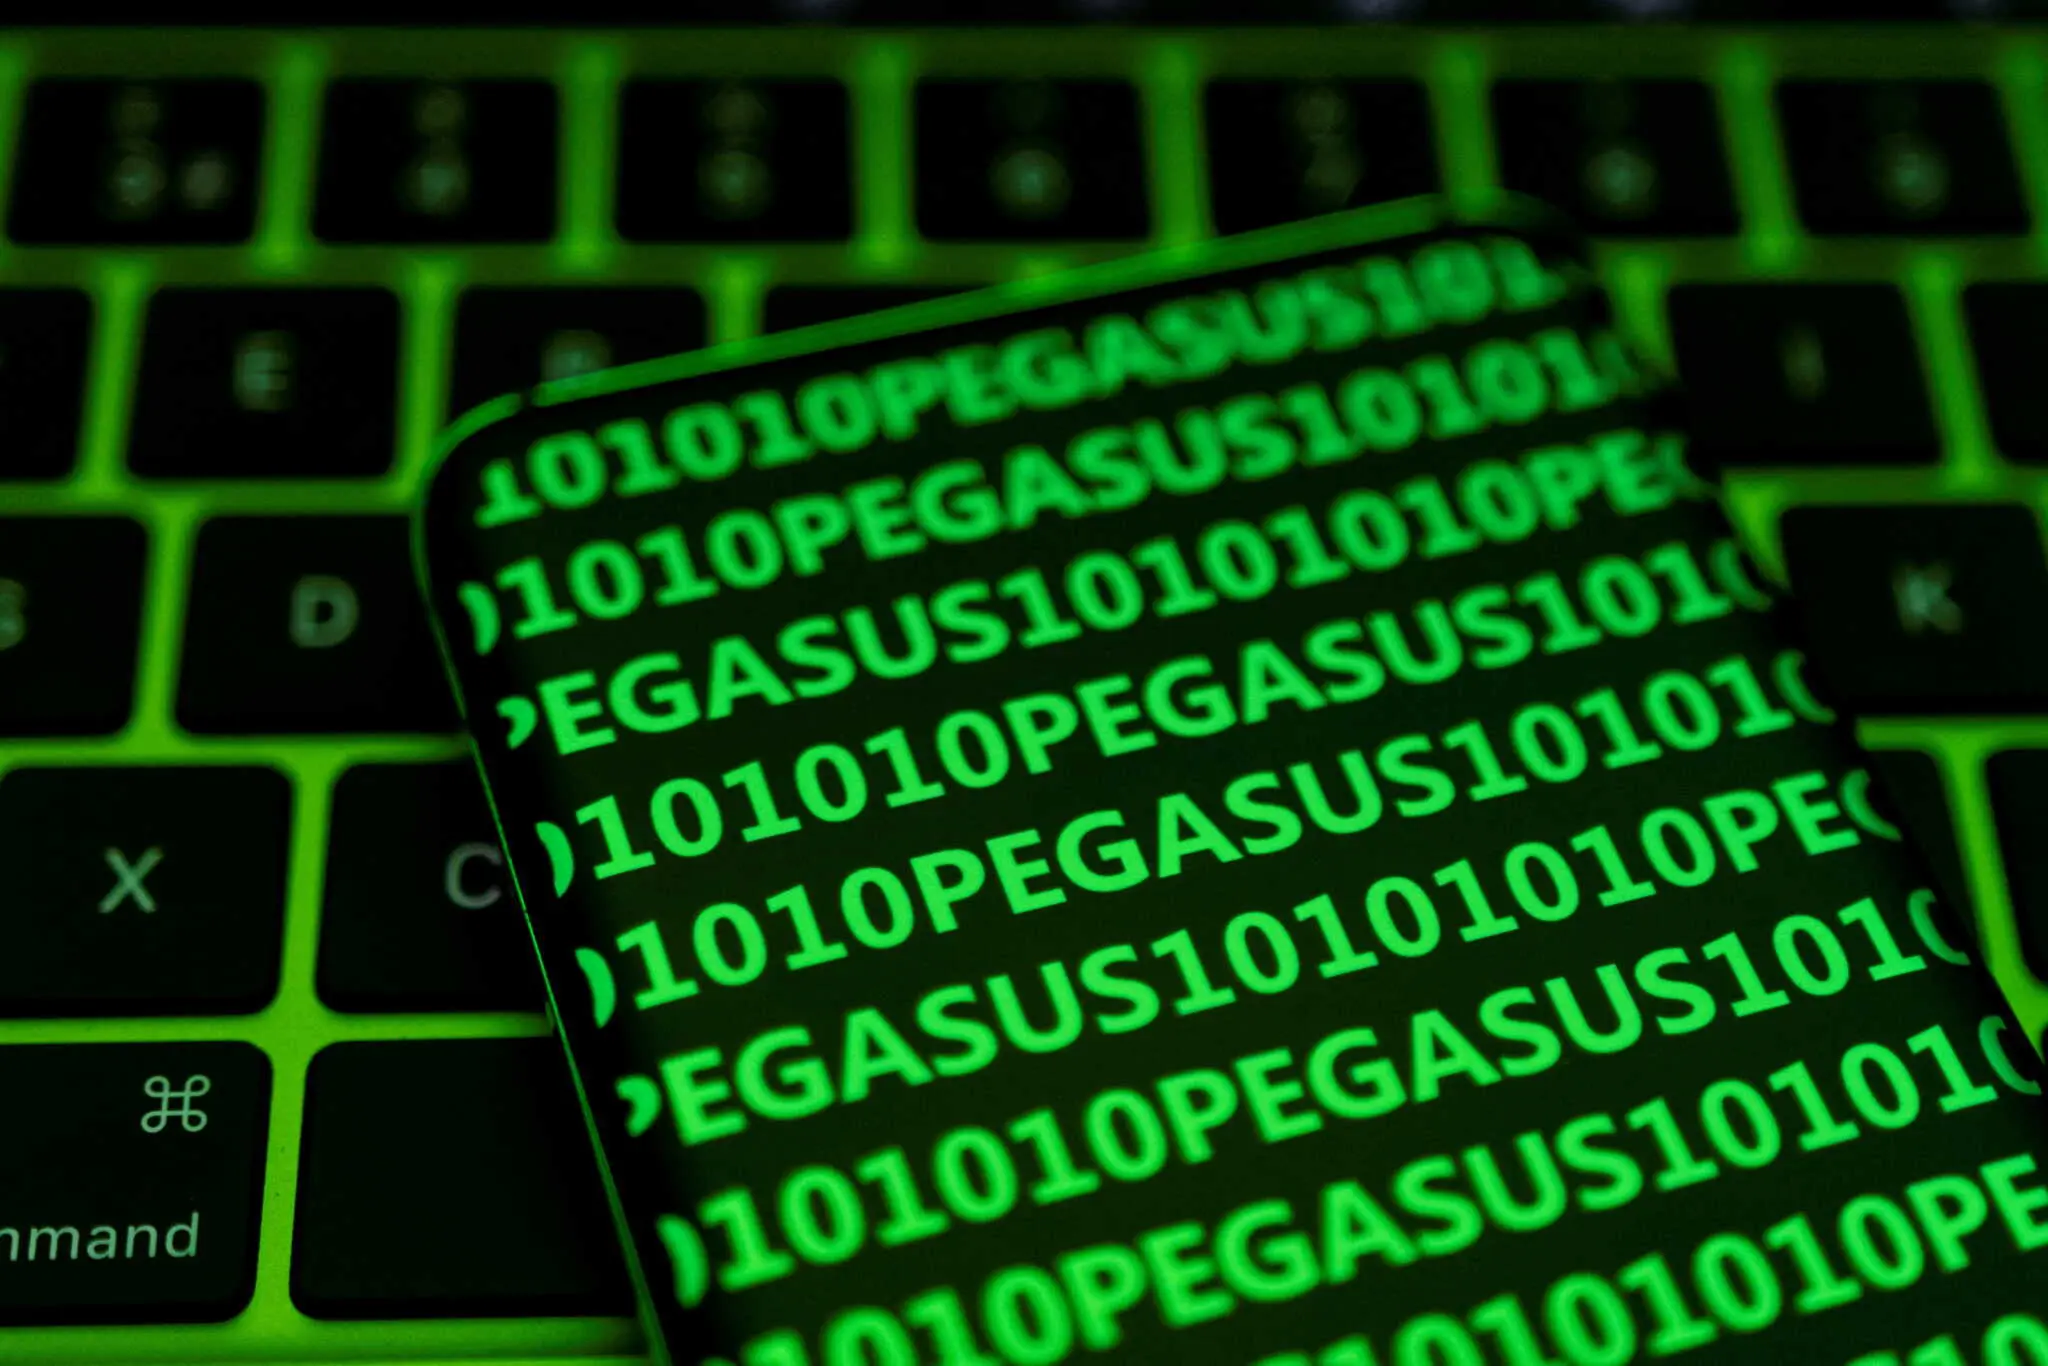 Σκάνδαλο υποκλοπών: Αυτεπάγγελτη ήταν η έρευνα και όχι κατόπιν αίτησης της PEGA για το παράνομο λογισμικό Predator